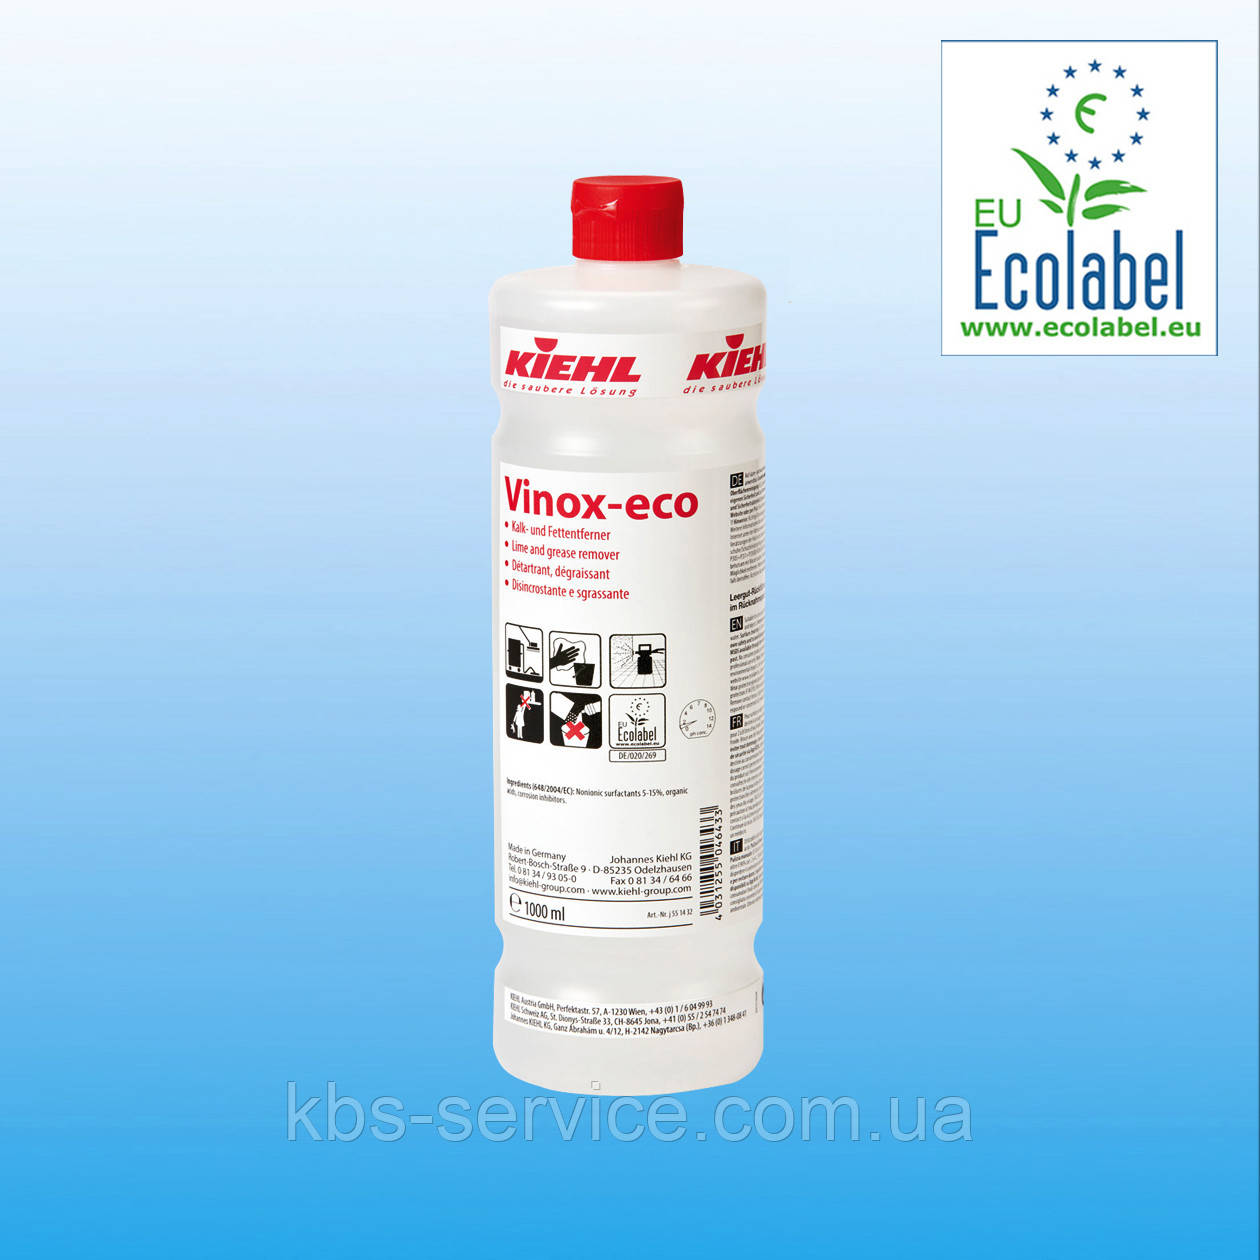 Засіб для видалення накипу та жирових забруднень Vinox-eco, 1 л,  Kiehl